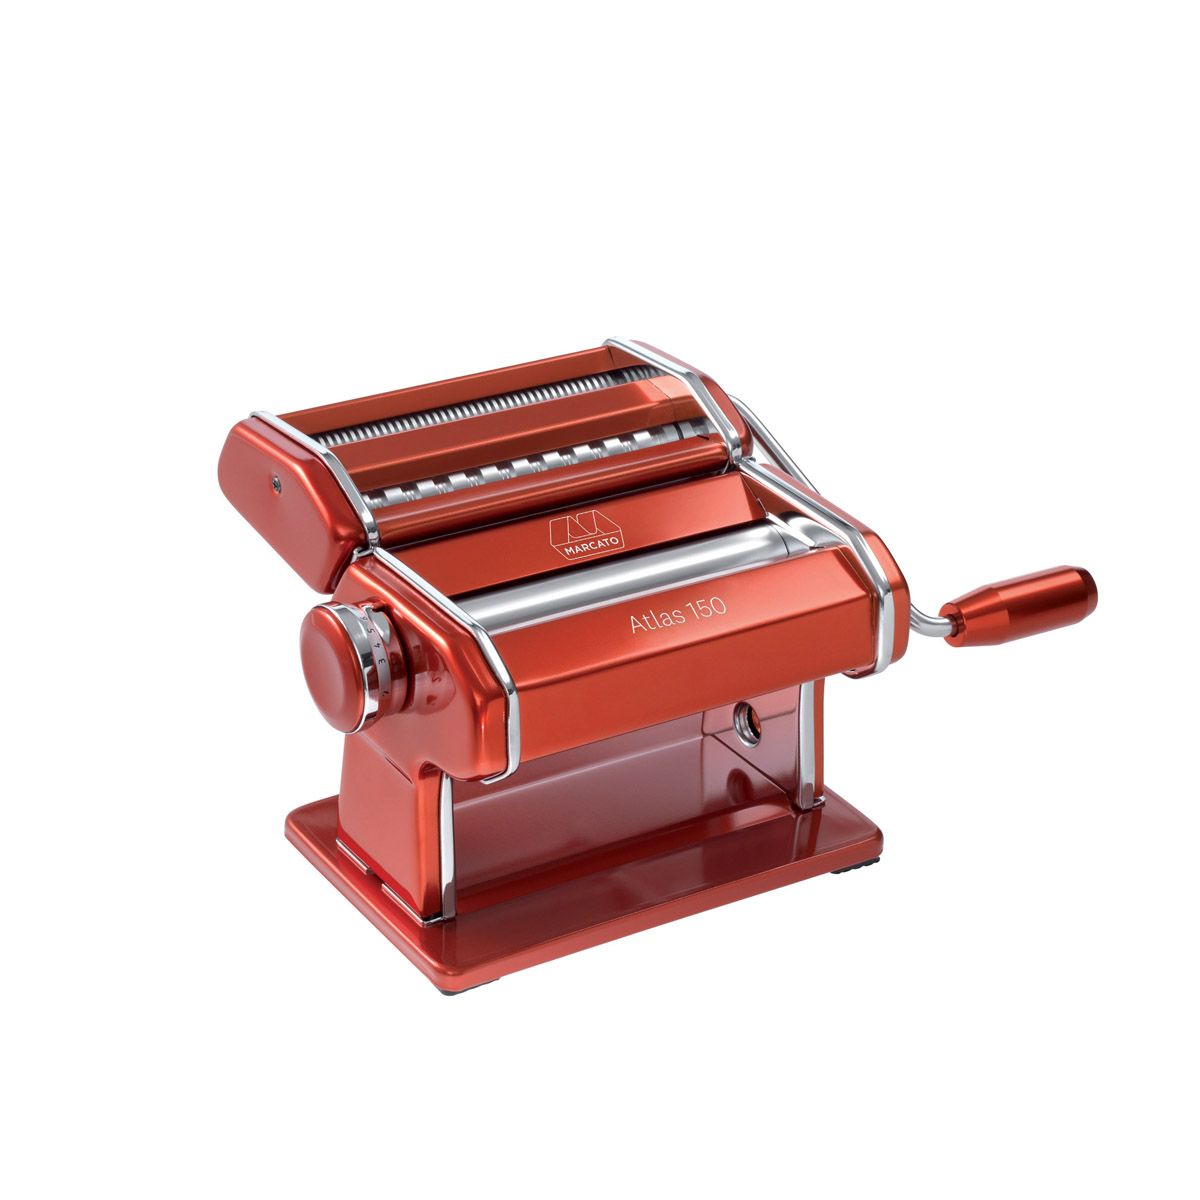 Marcato 150 Pasta Machine, Red